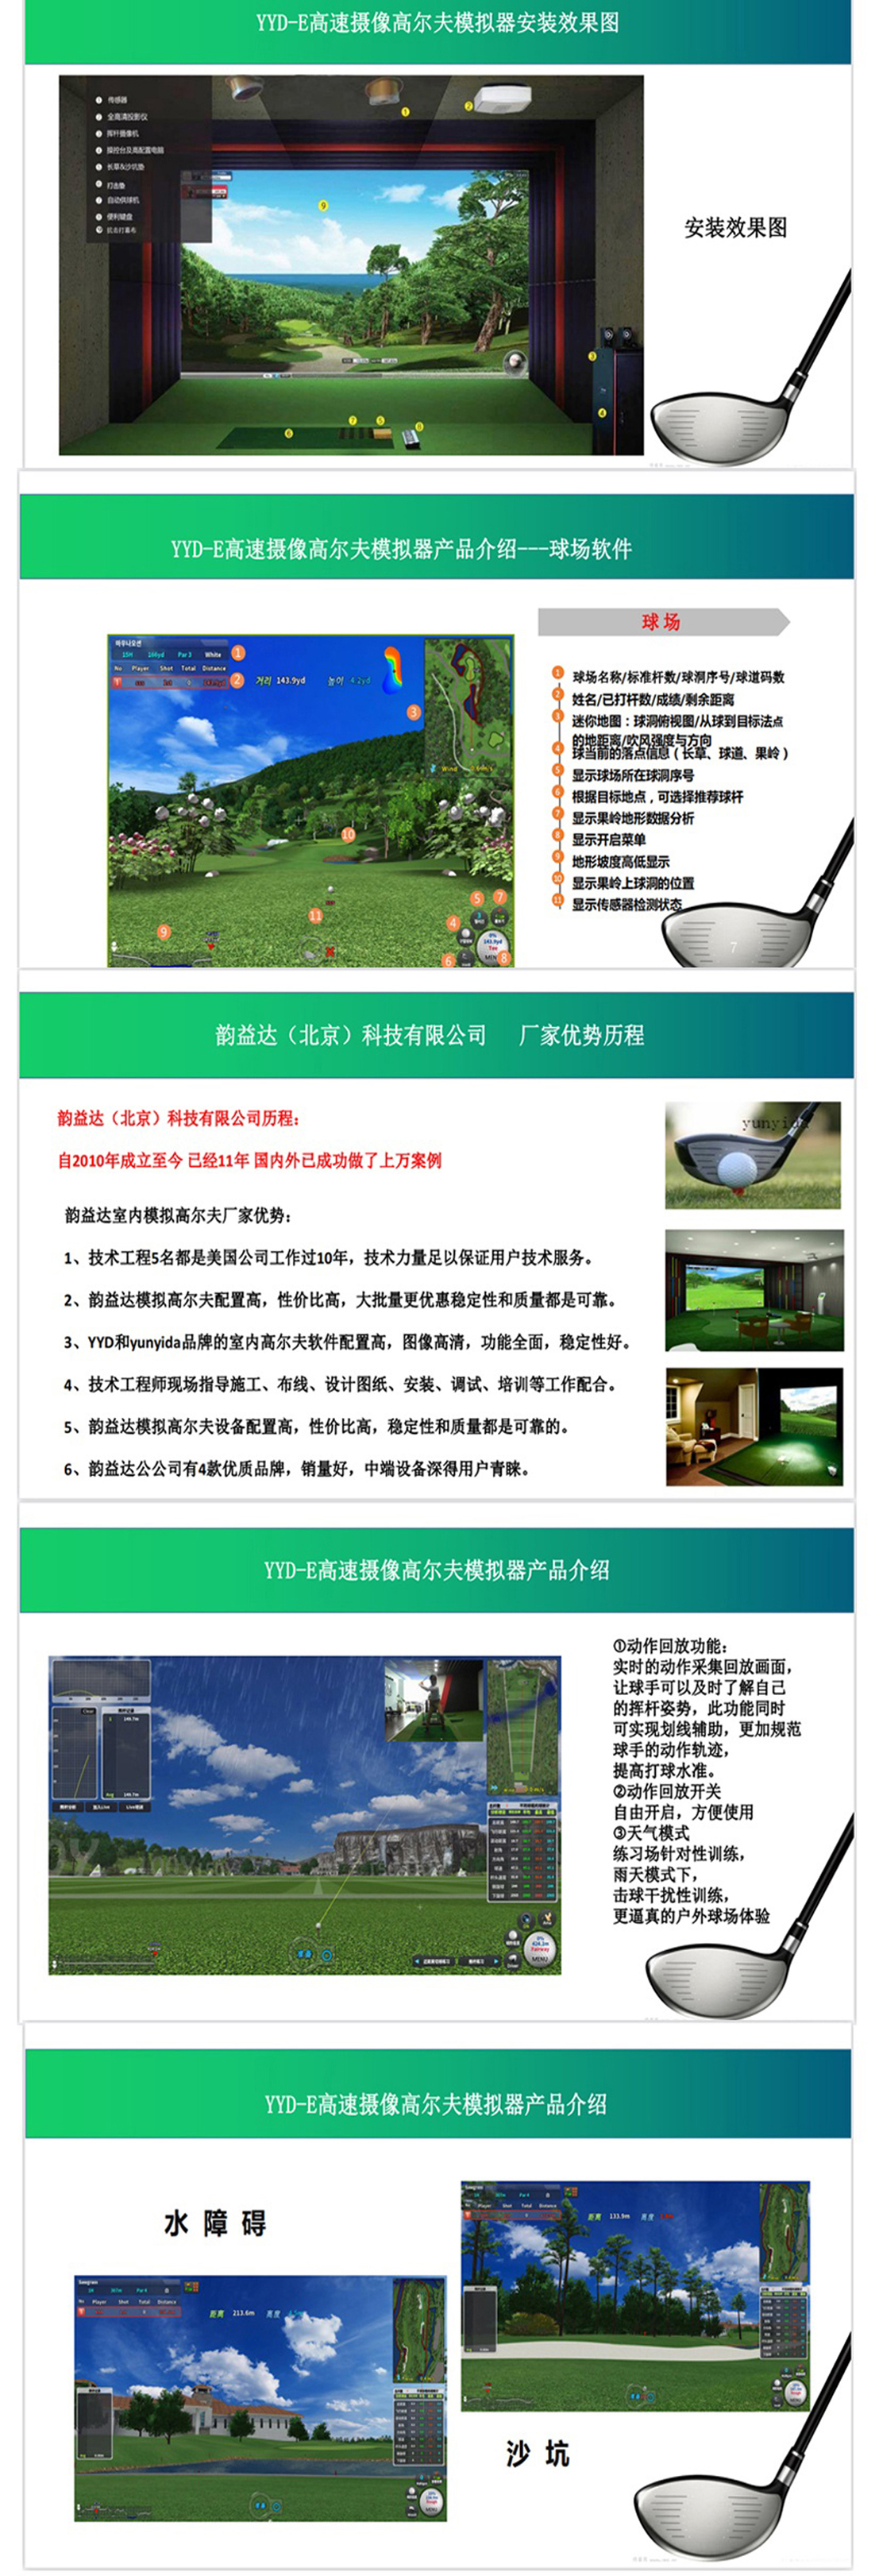 模拟室内高尔夫系统设备 02.jpg